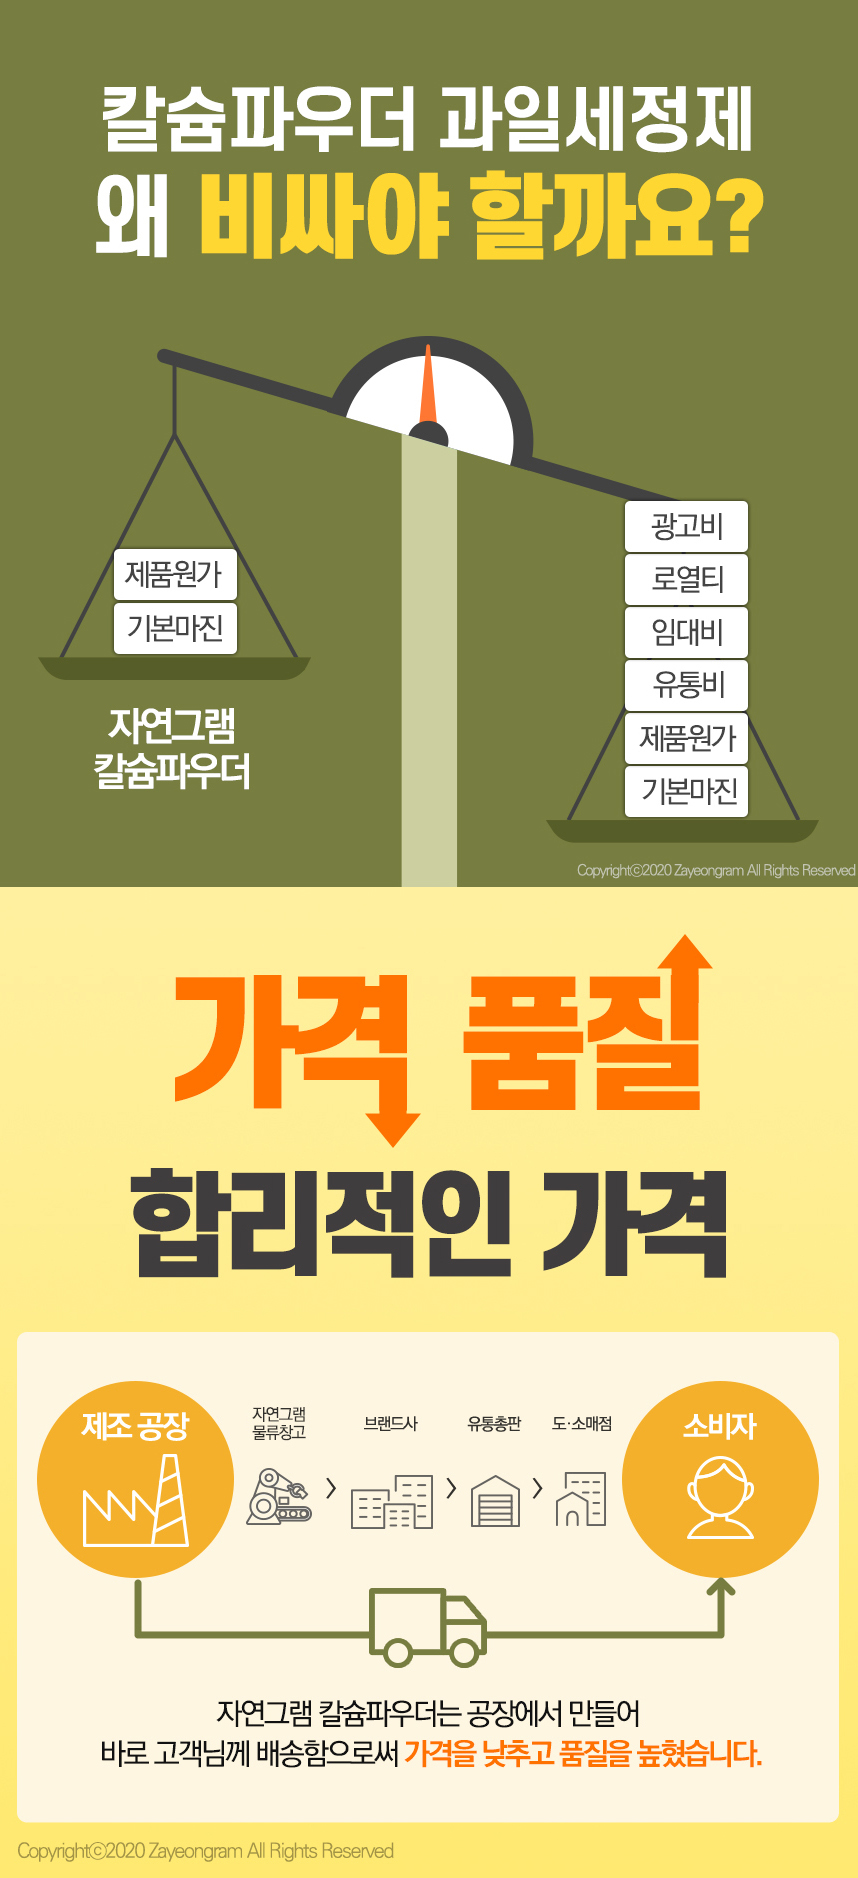 韓國食品-[Zayeon Gram] 鈣粉 150g